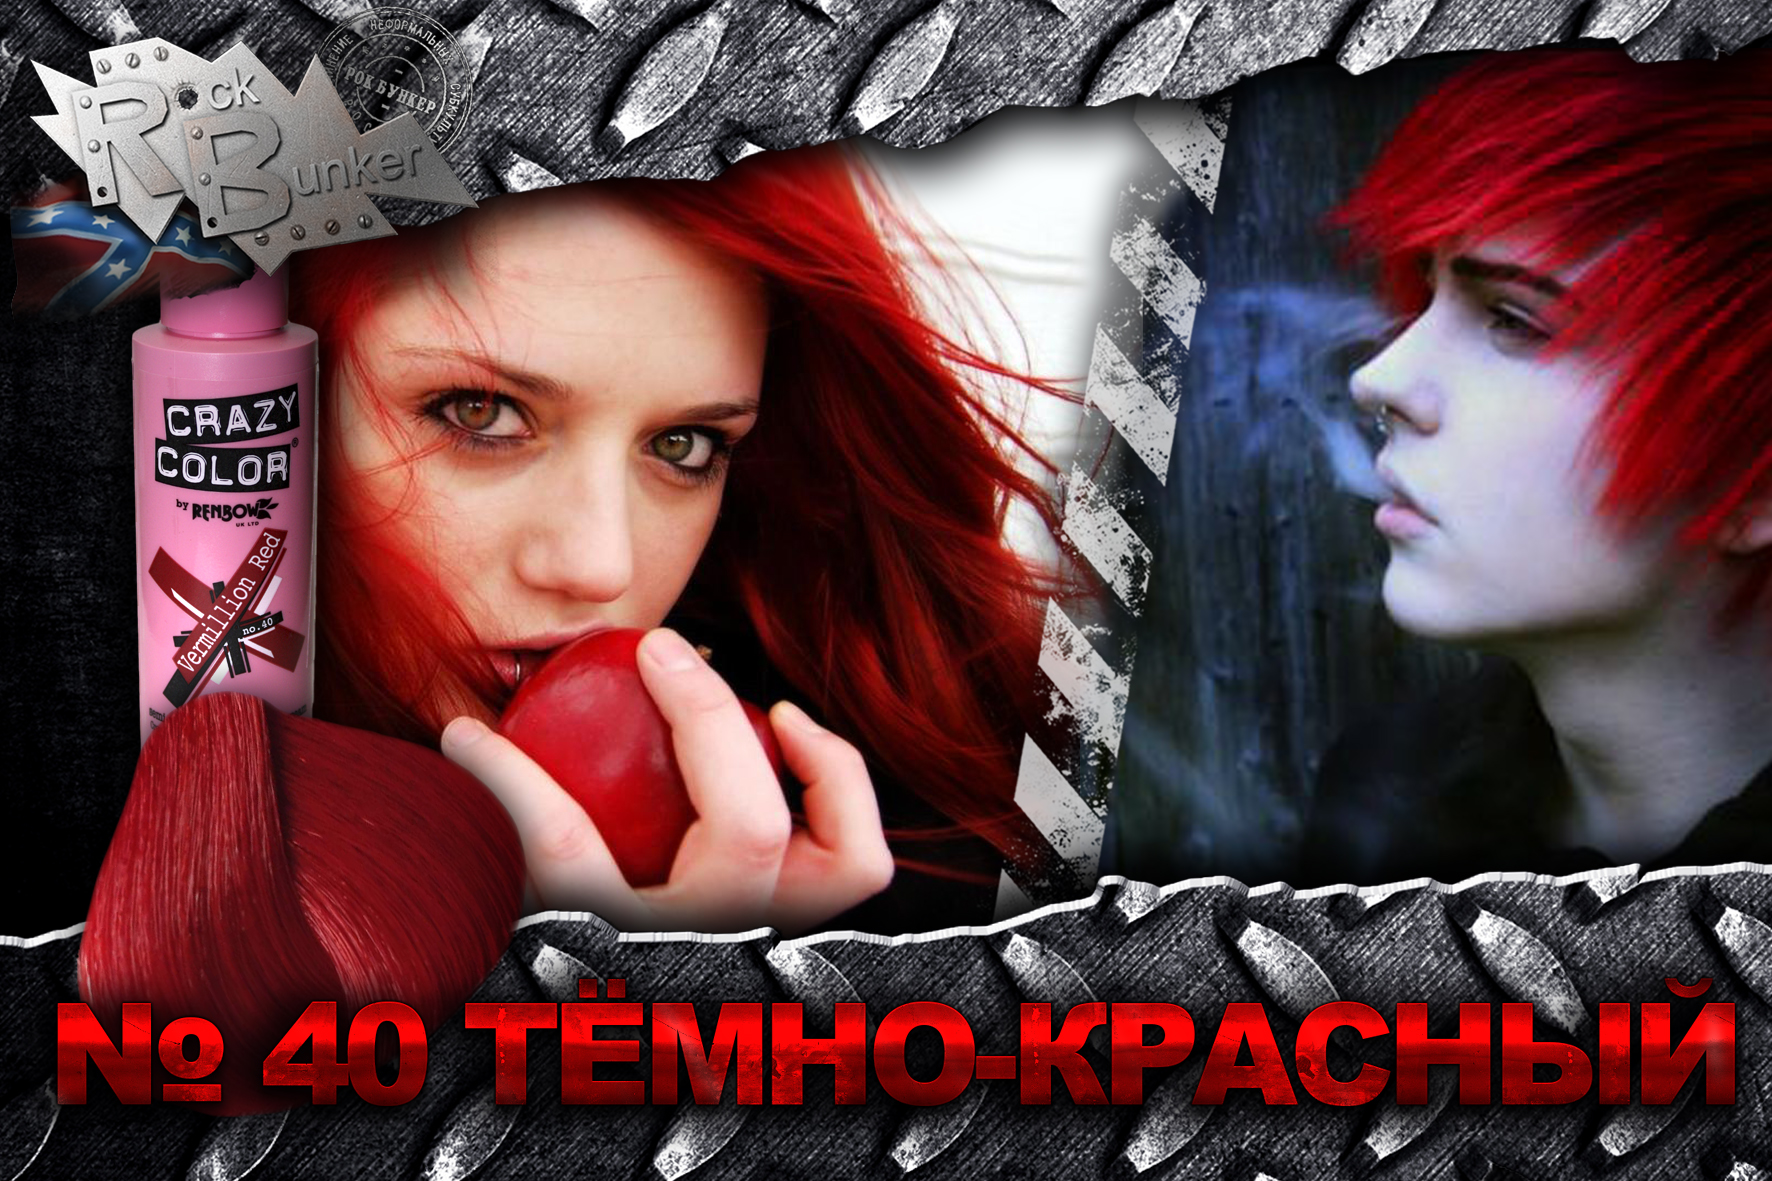 Краска для волос Crazy Color Extreme 40 Vermillion Red темно-красная - фото 2 - rockbunker.ru